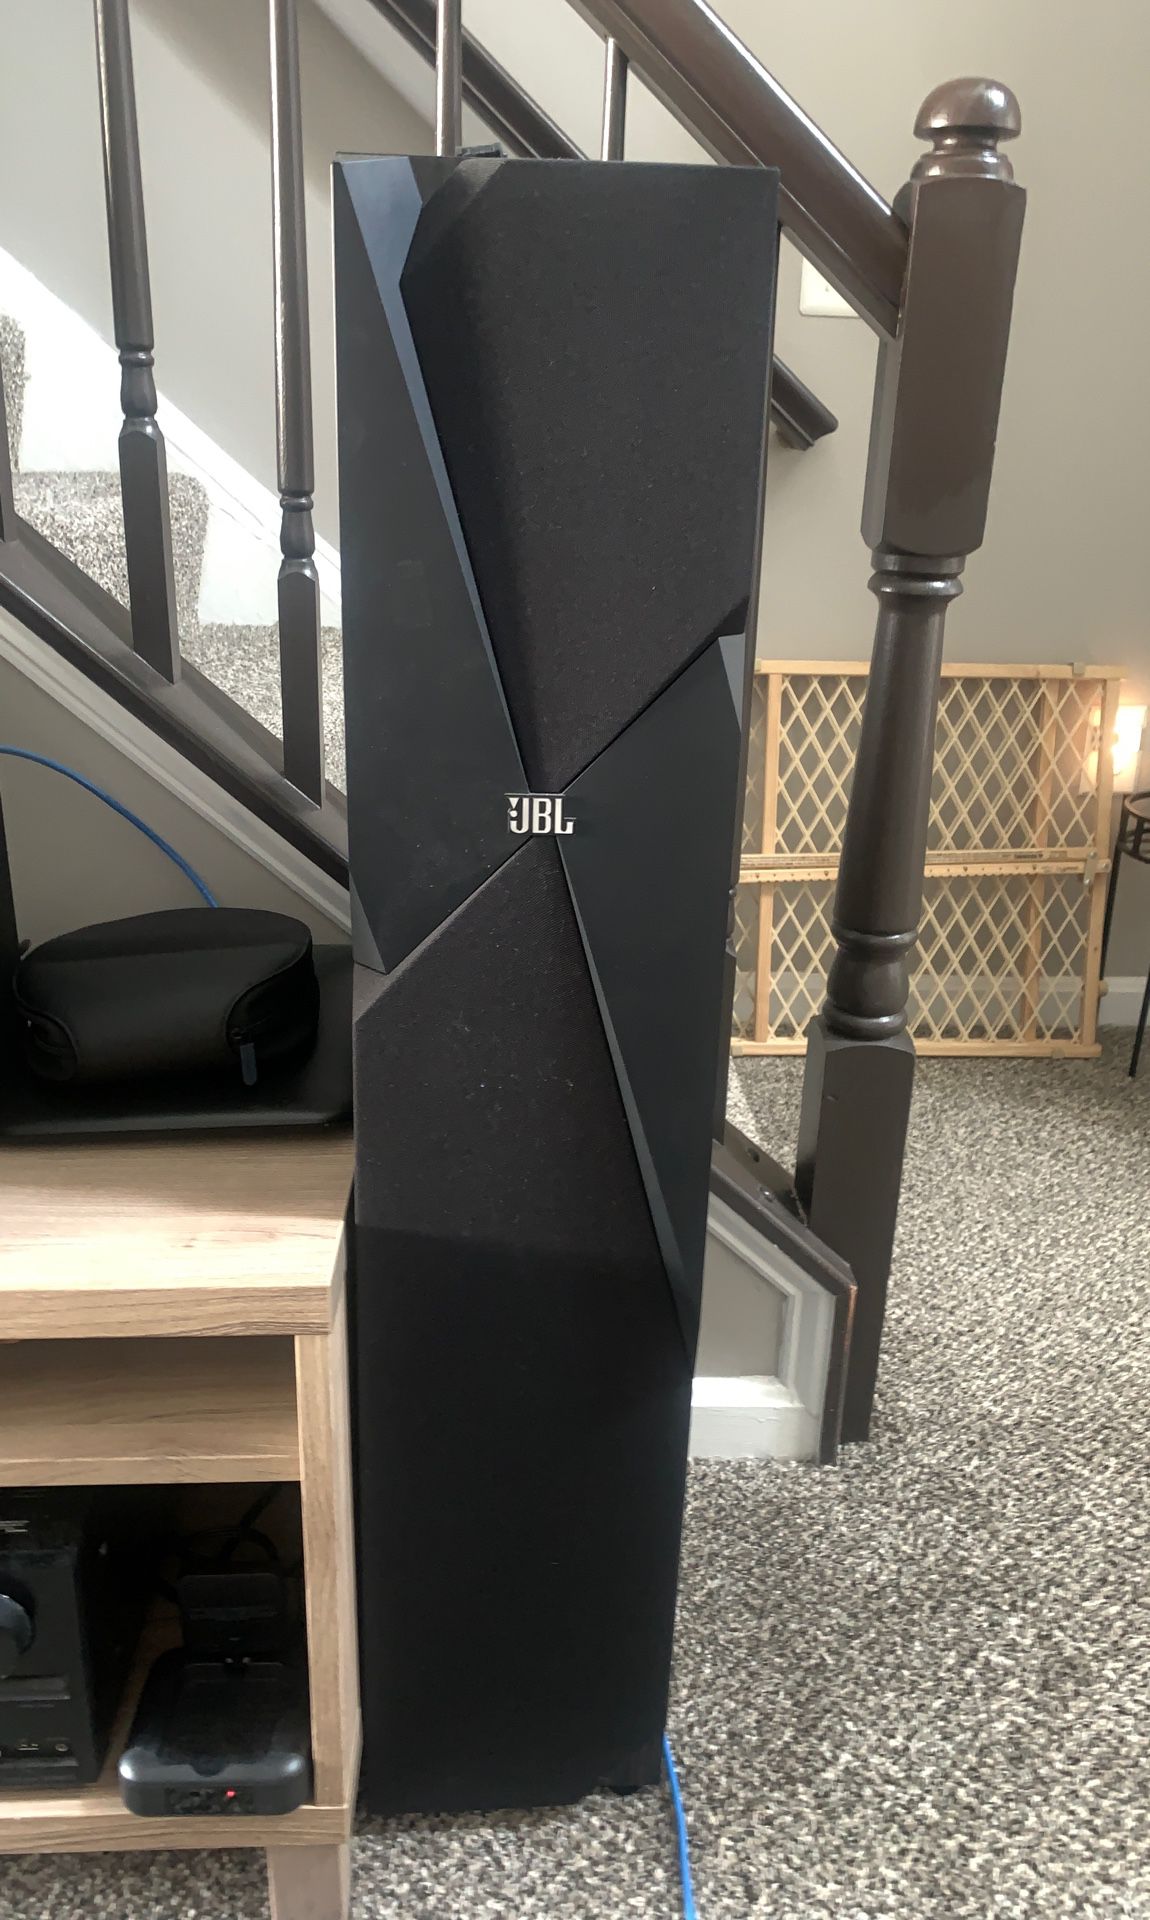 JBL studio speakers and Polk sub